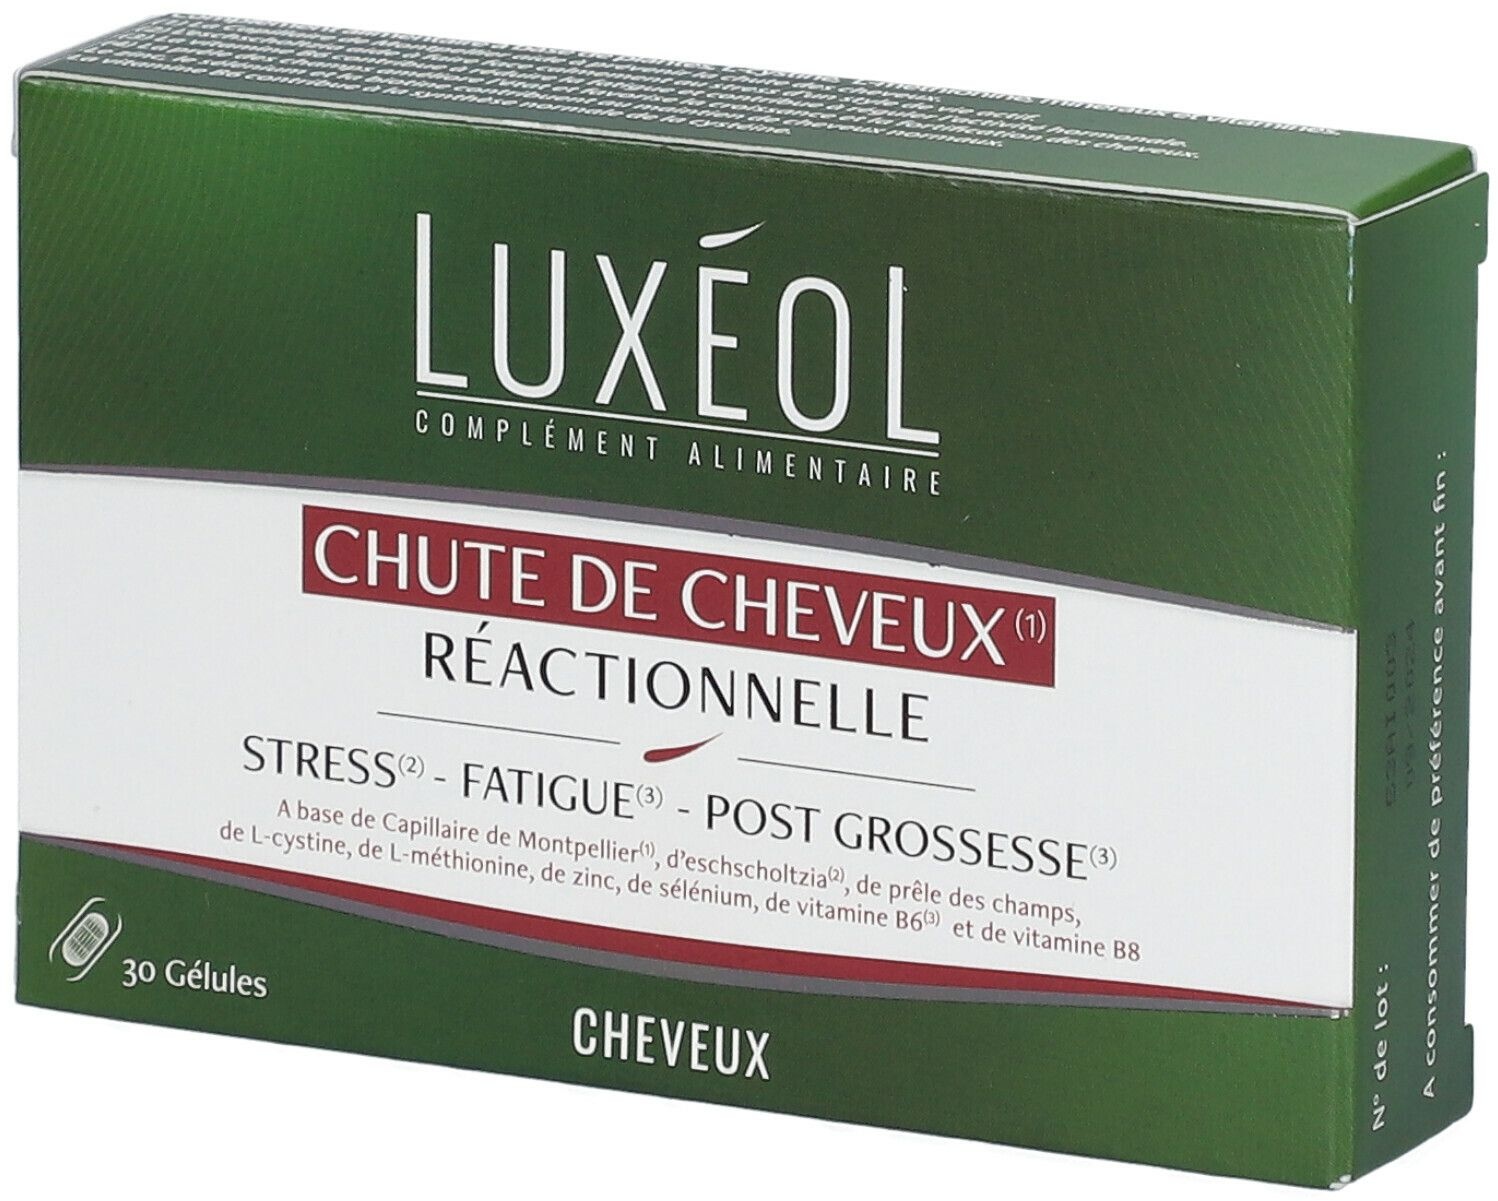 LUXÉOL Chute de Cheveux Réactionnelle 30 pc(s) capsule(s)